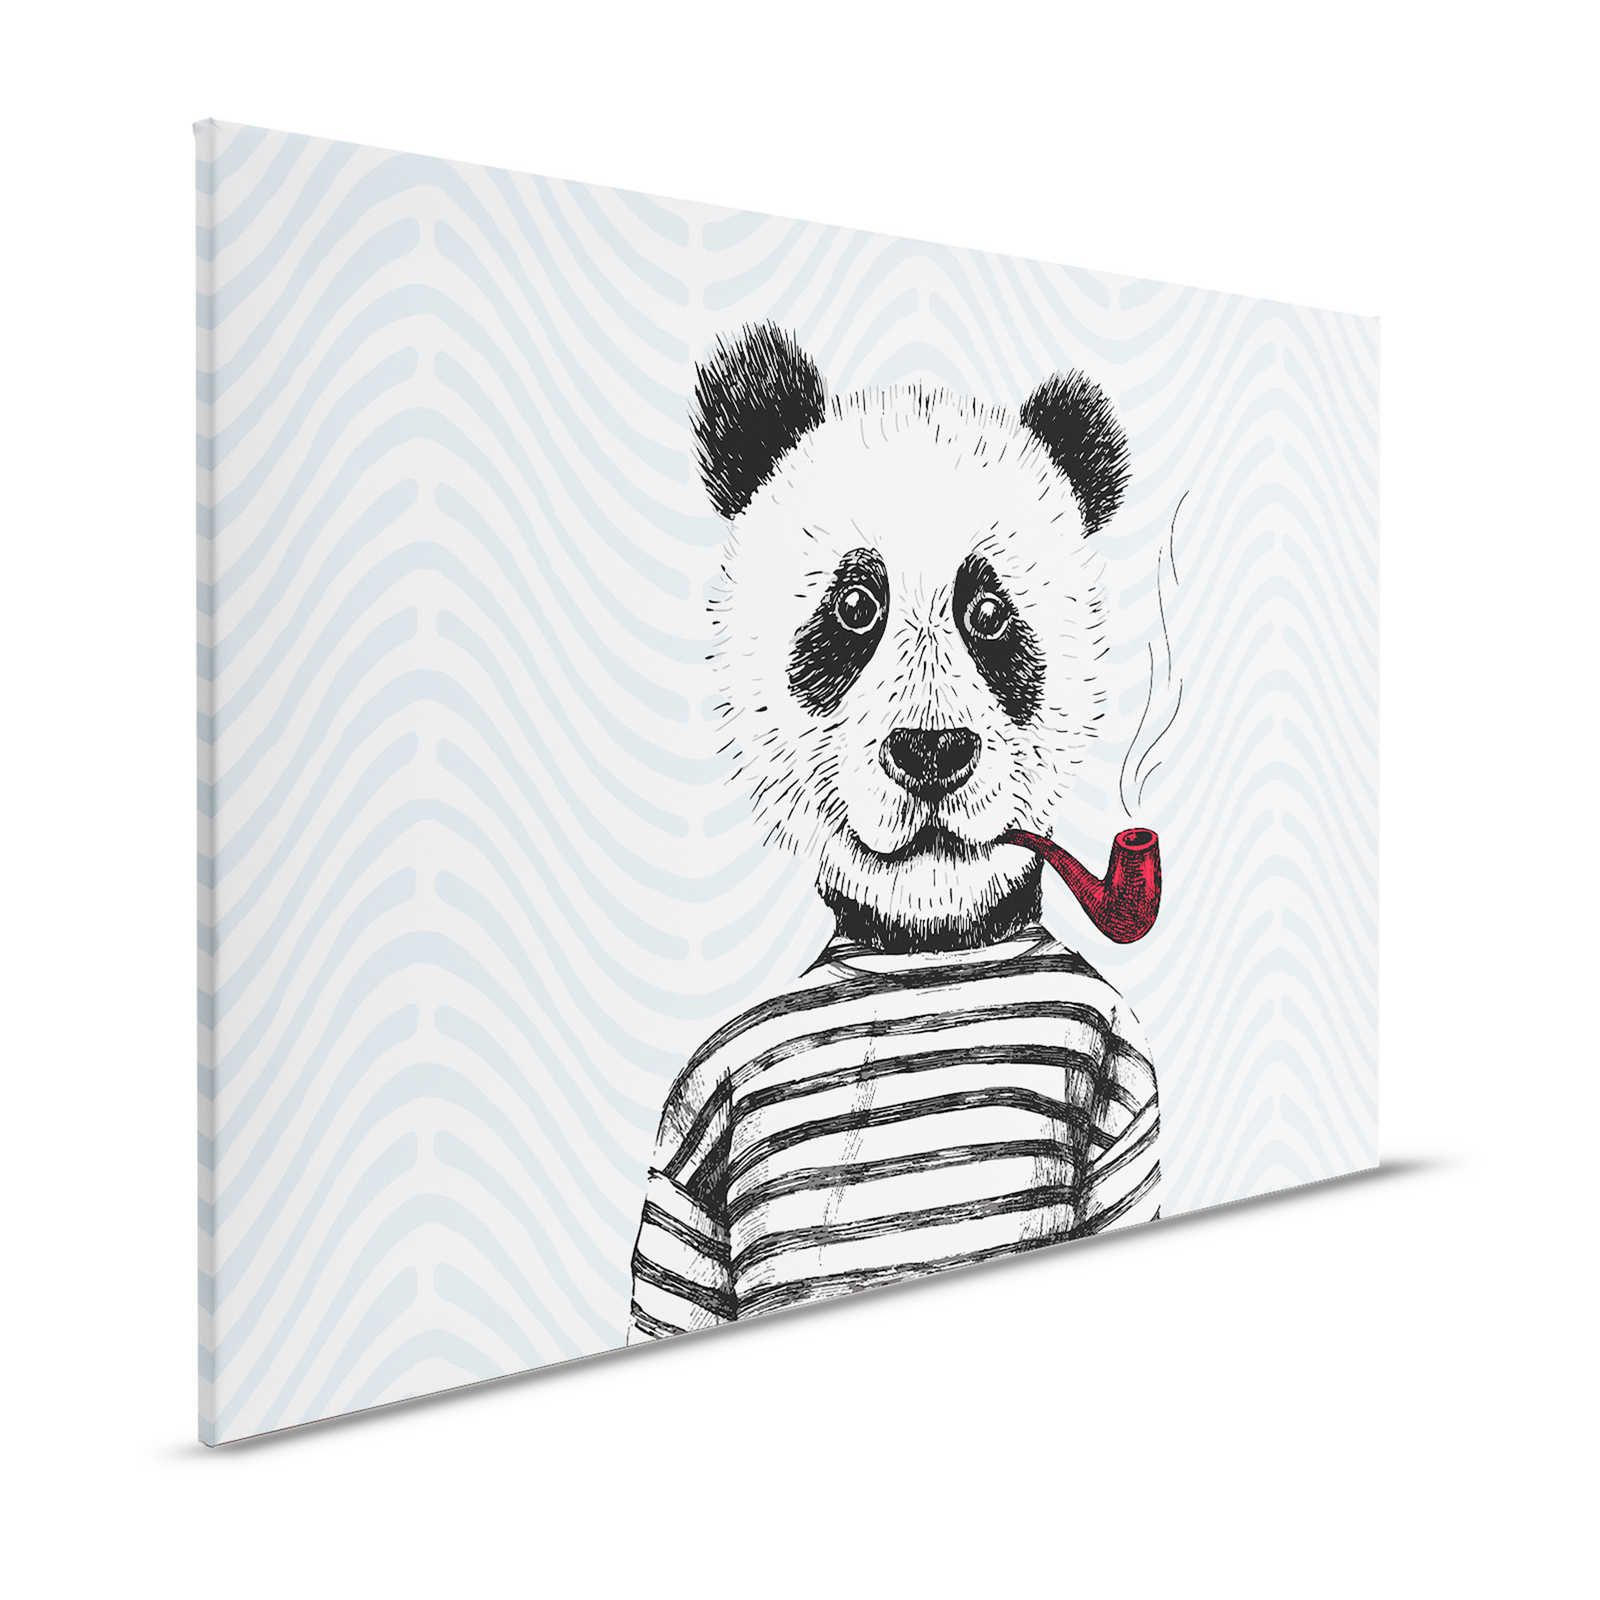 Tableau sur toile Style BD pour chambre d'enfant motif panda - 1,20 m x 0,80 m
